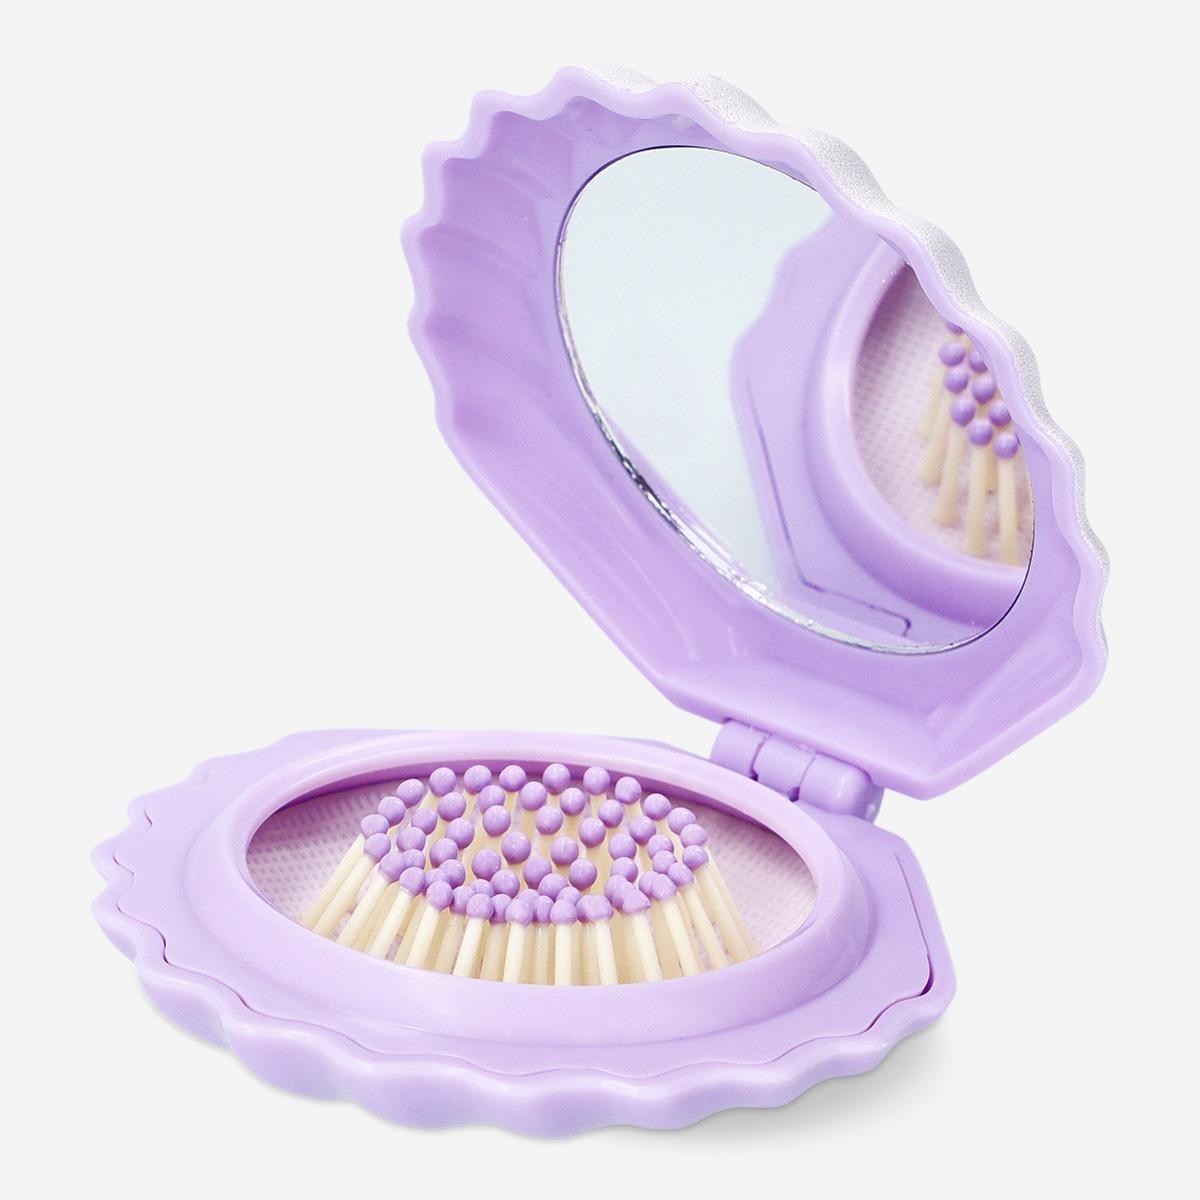 Purple hairbrush and mirror